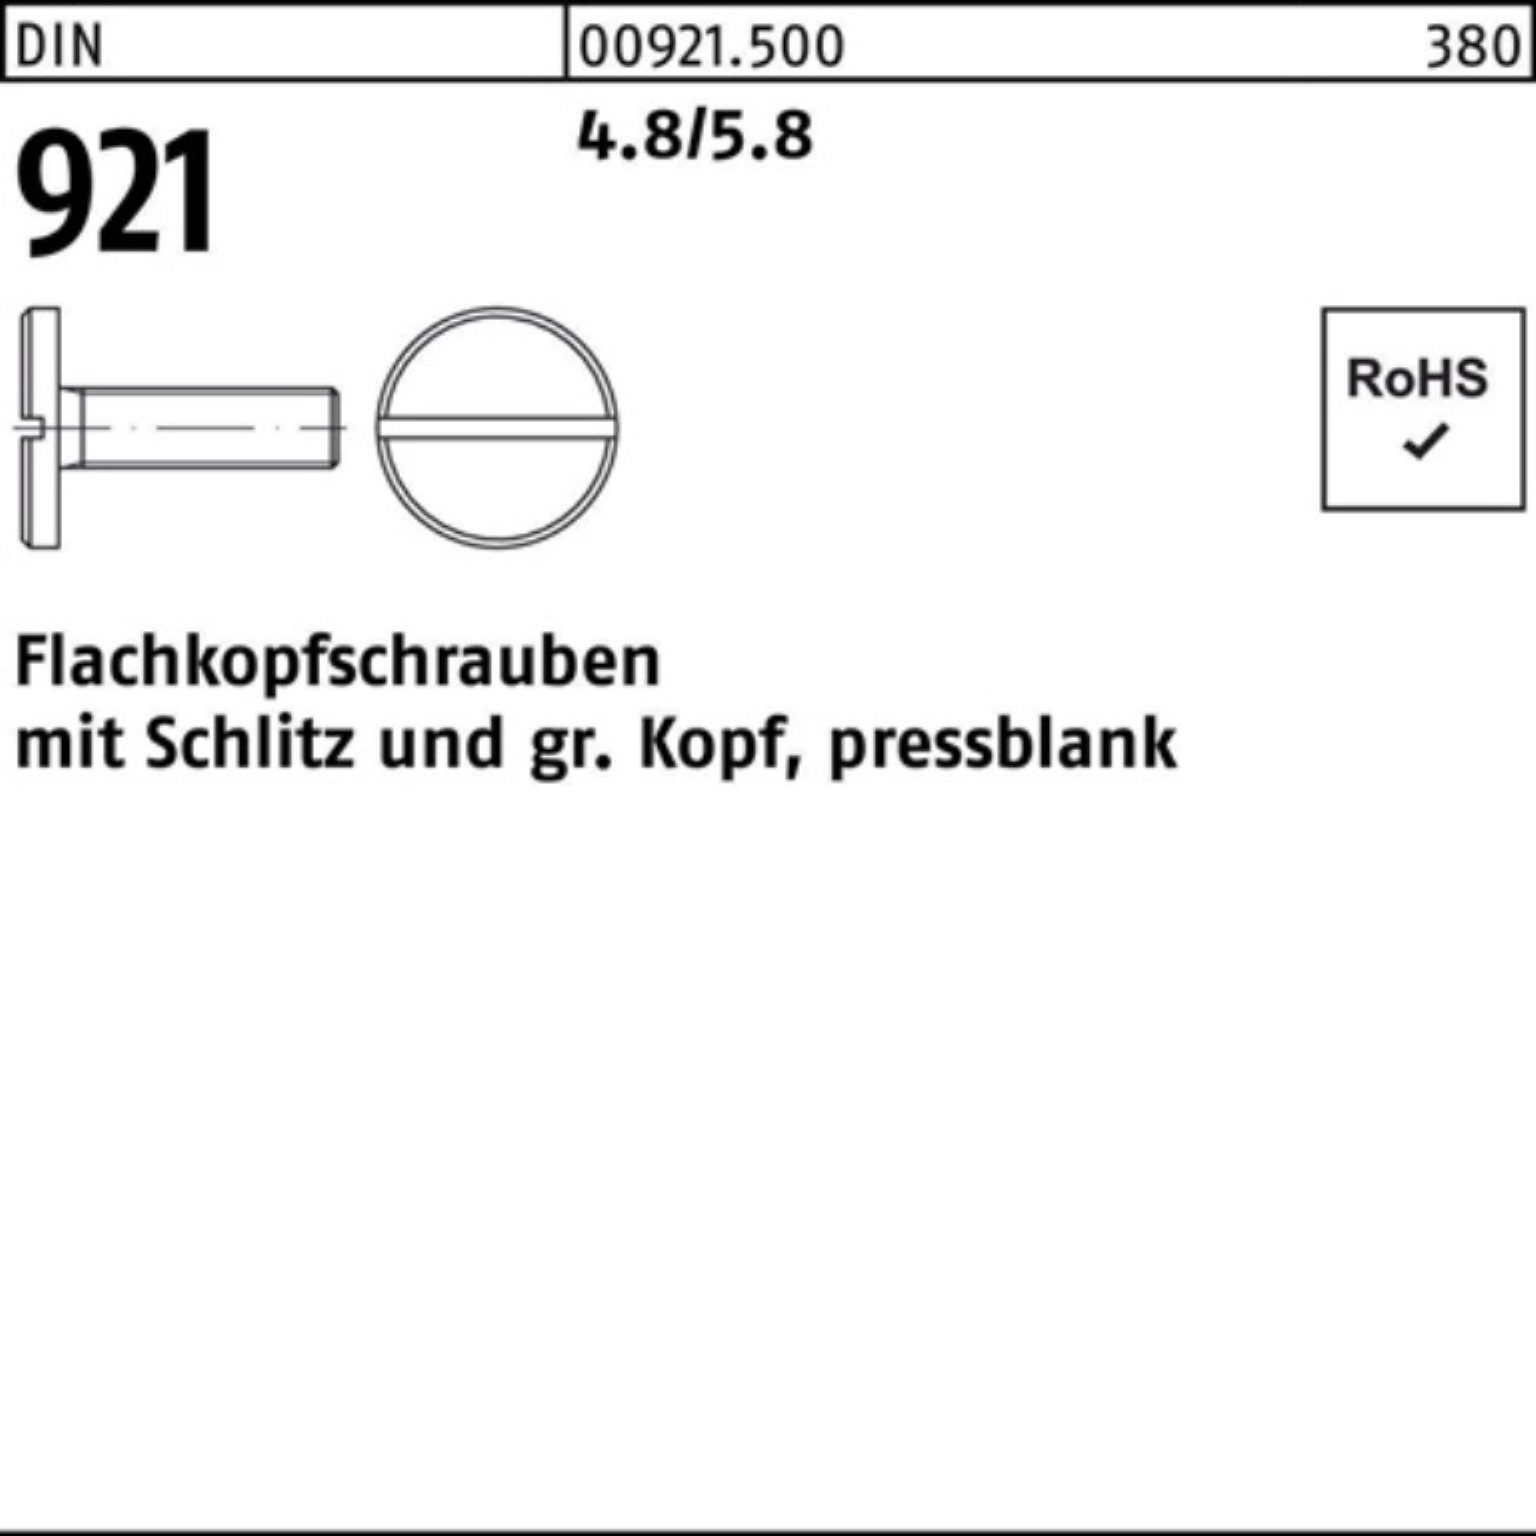 Reyher Schraube 100er Pack Flachkopfschraube DIN 921 Schlitz M5x 6 4.8/5.8 100 Stück